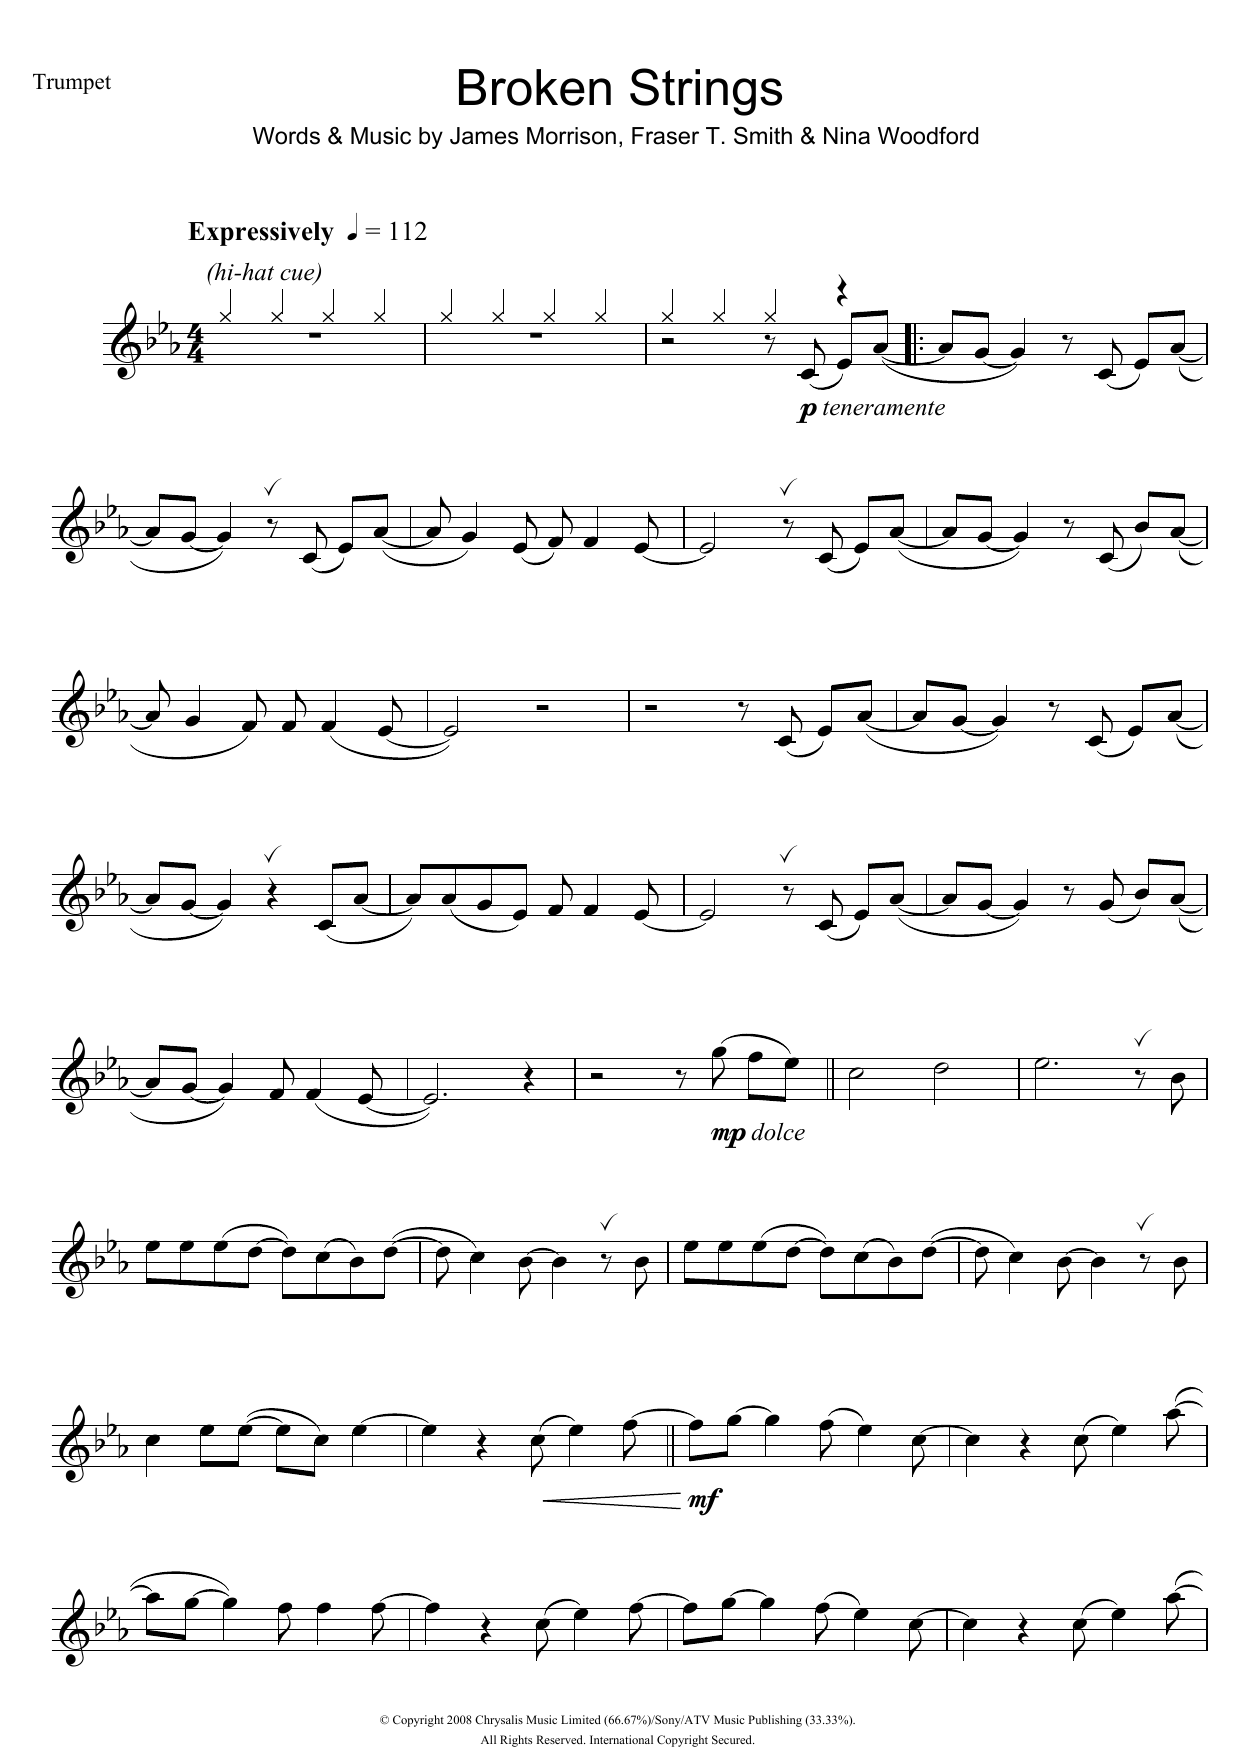 James Morrison Broken Strings Sheet Music Notes & Chords for Violin - Download or Print PDF